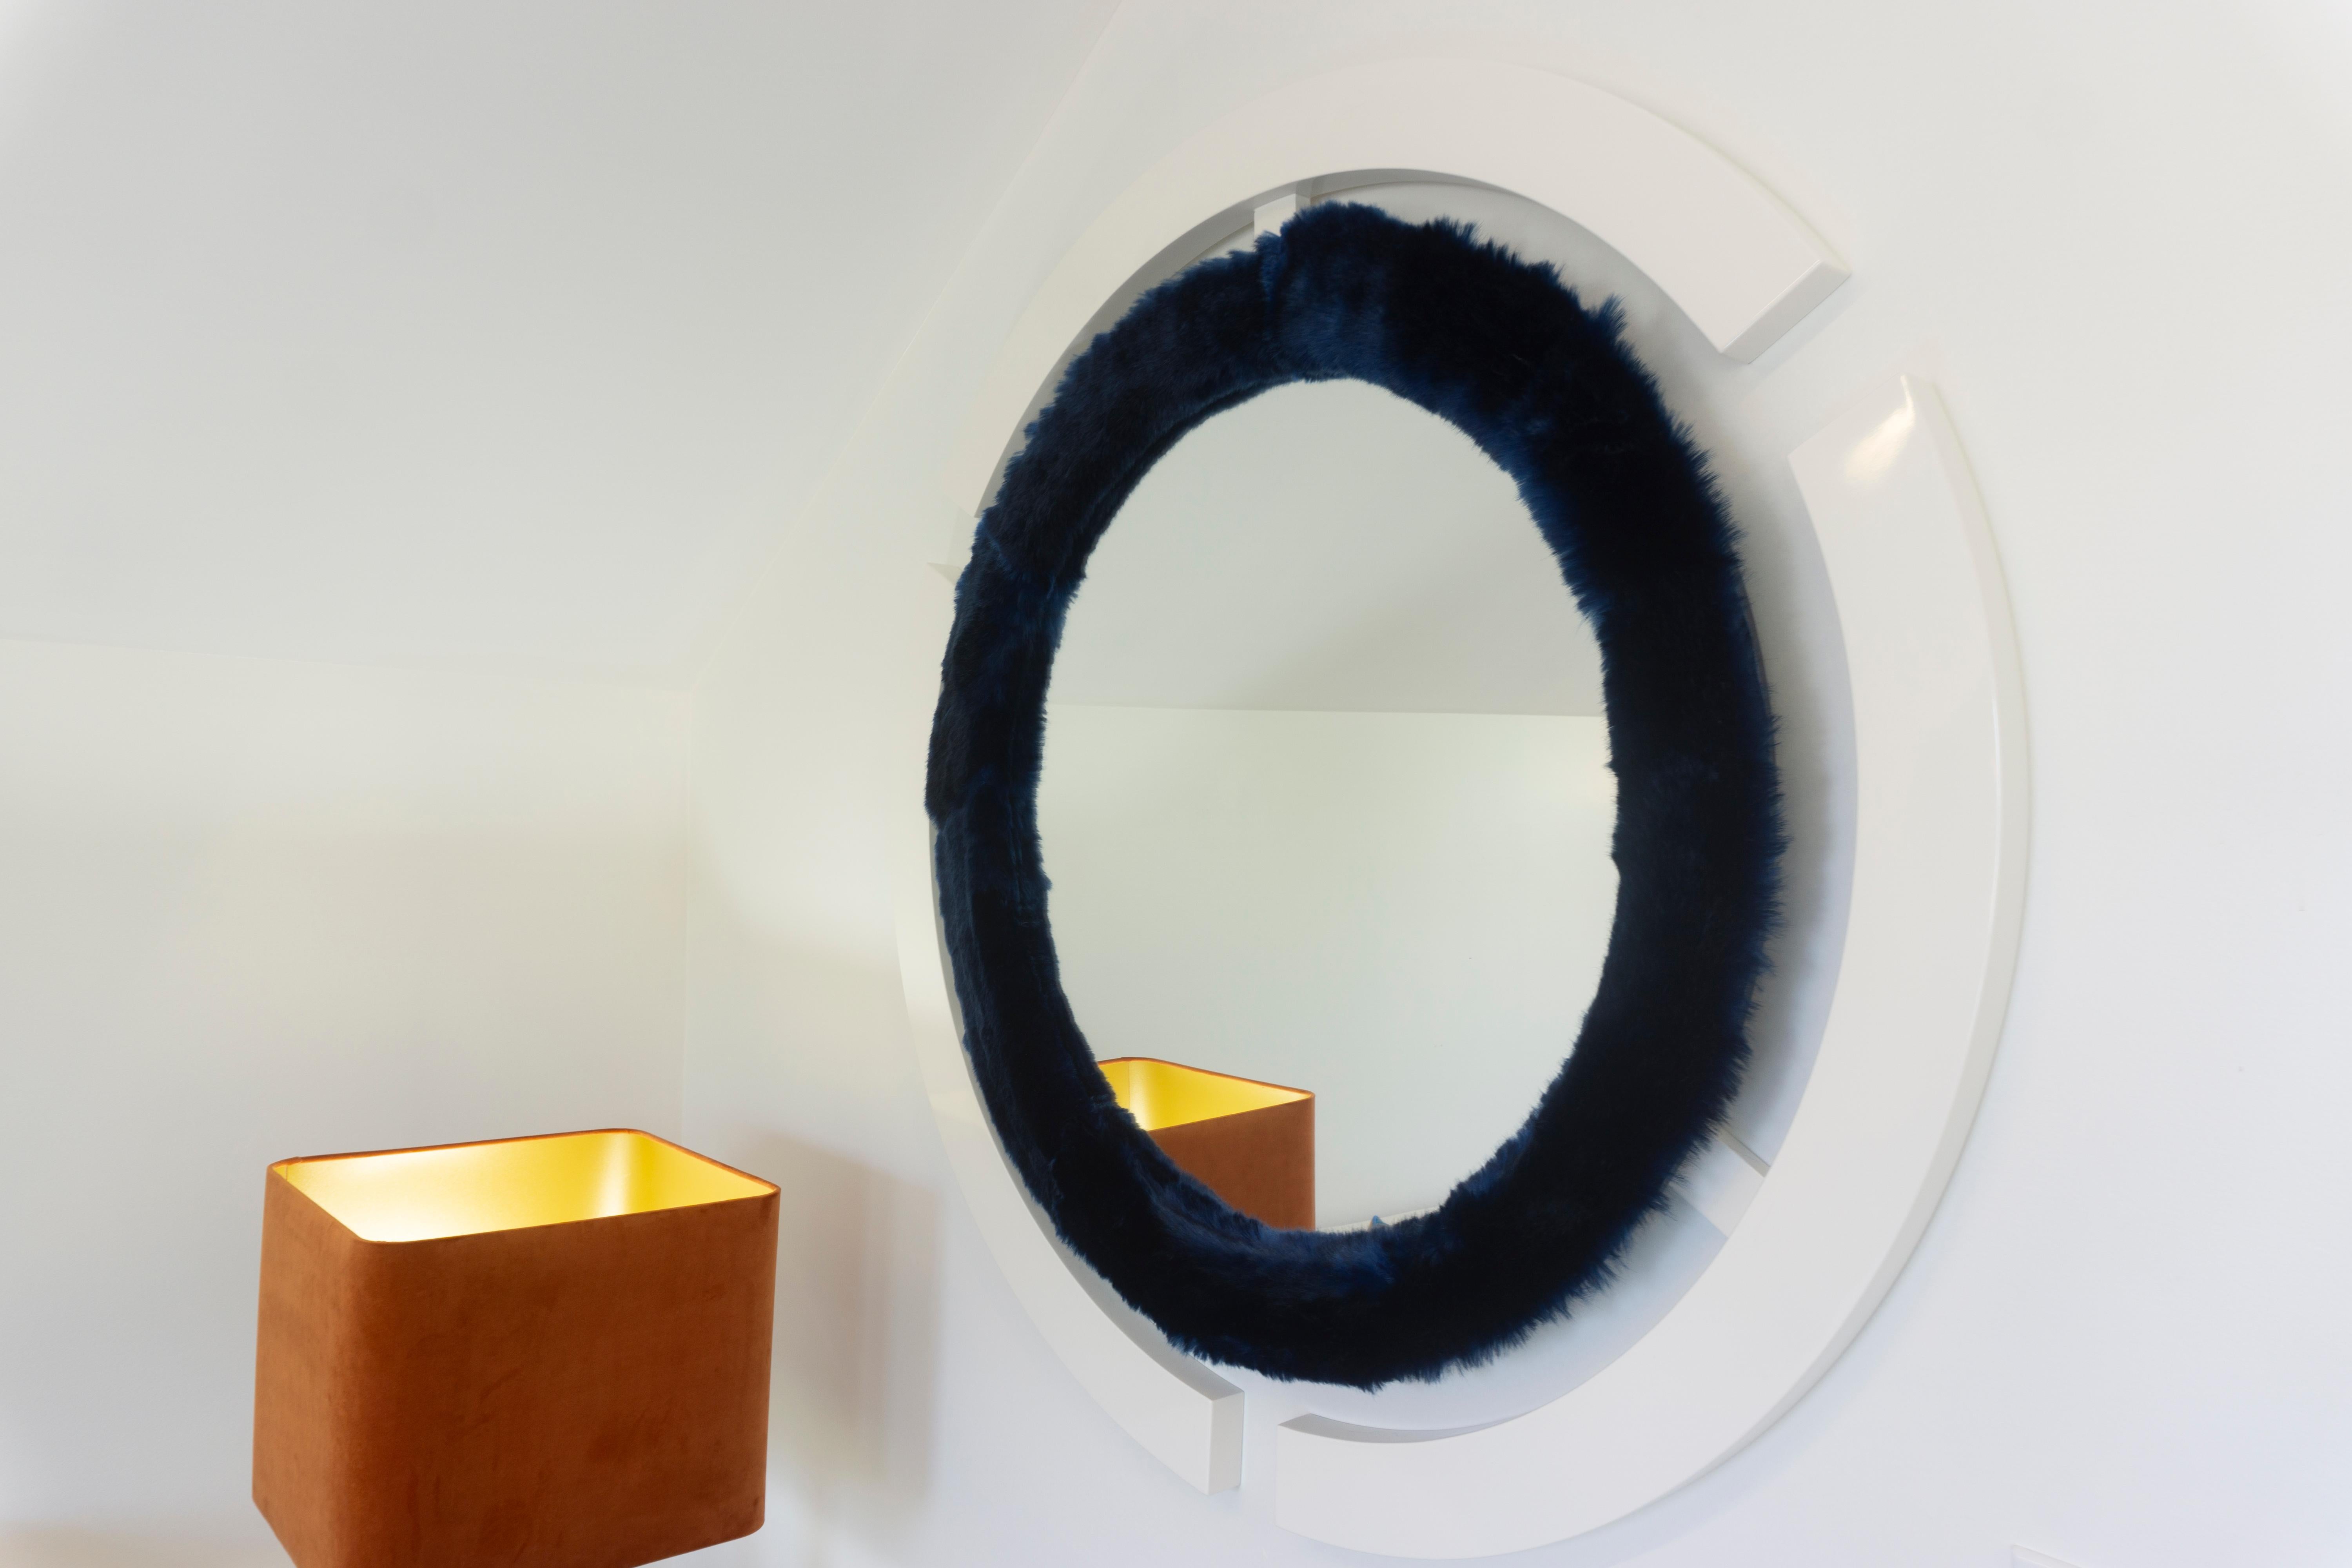 Ein moderner, handgefertigter runder Wandspiegel, inspiriert vom Space Age-Dekor mit einem wilden Twist. Der Glasspiegel ist mit Kaninchenfellimitat und einem weiß lackierten Rand eingefasst. Sondergrößen und -ausführungen sind auf Anfrage